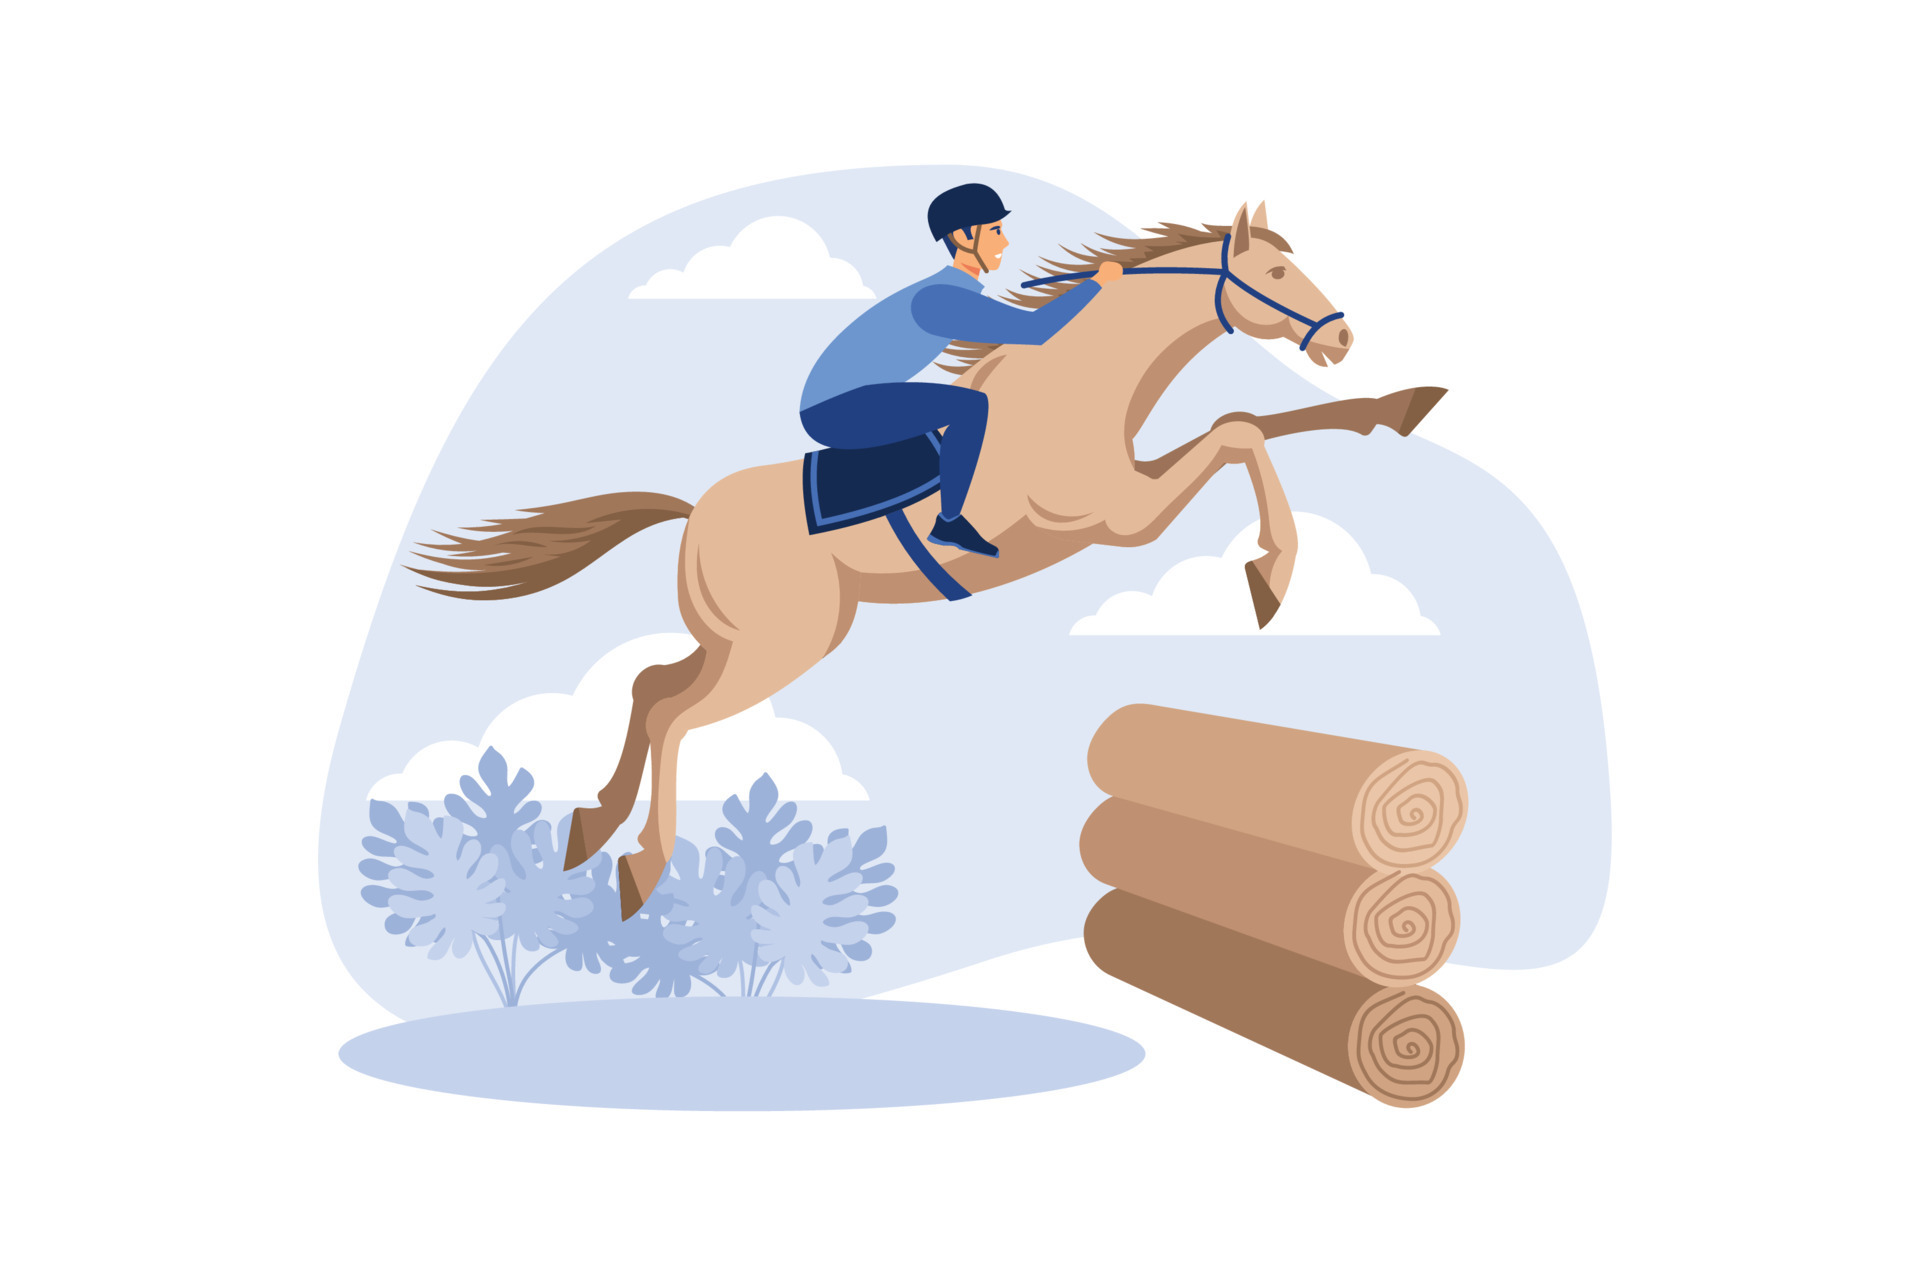 eventos equestres. ilustração de um cavalo com um cavaleiro pulando a  barreira das cabanas de madeira. um cavaleiro em um cavalo salta sobre um  obstáculo contra uma ilustração vetorial plana de nuvem